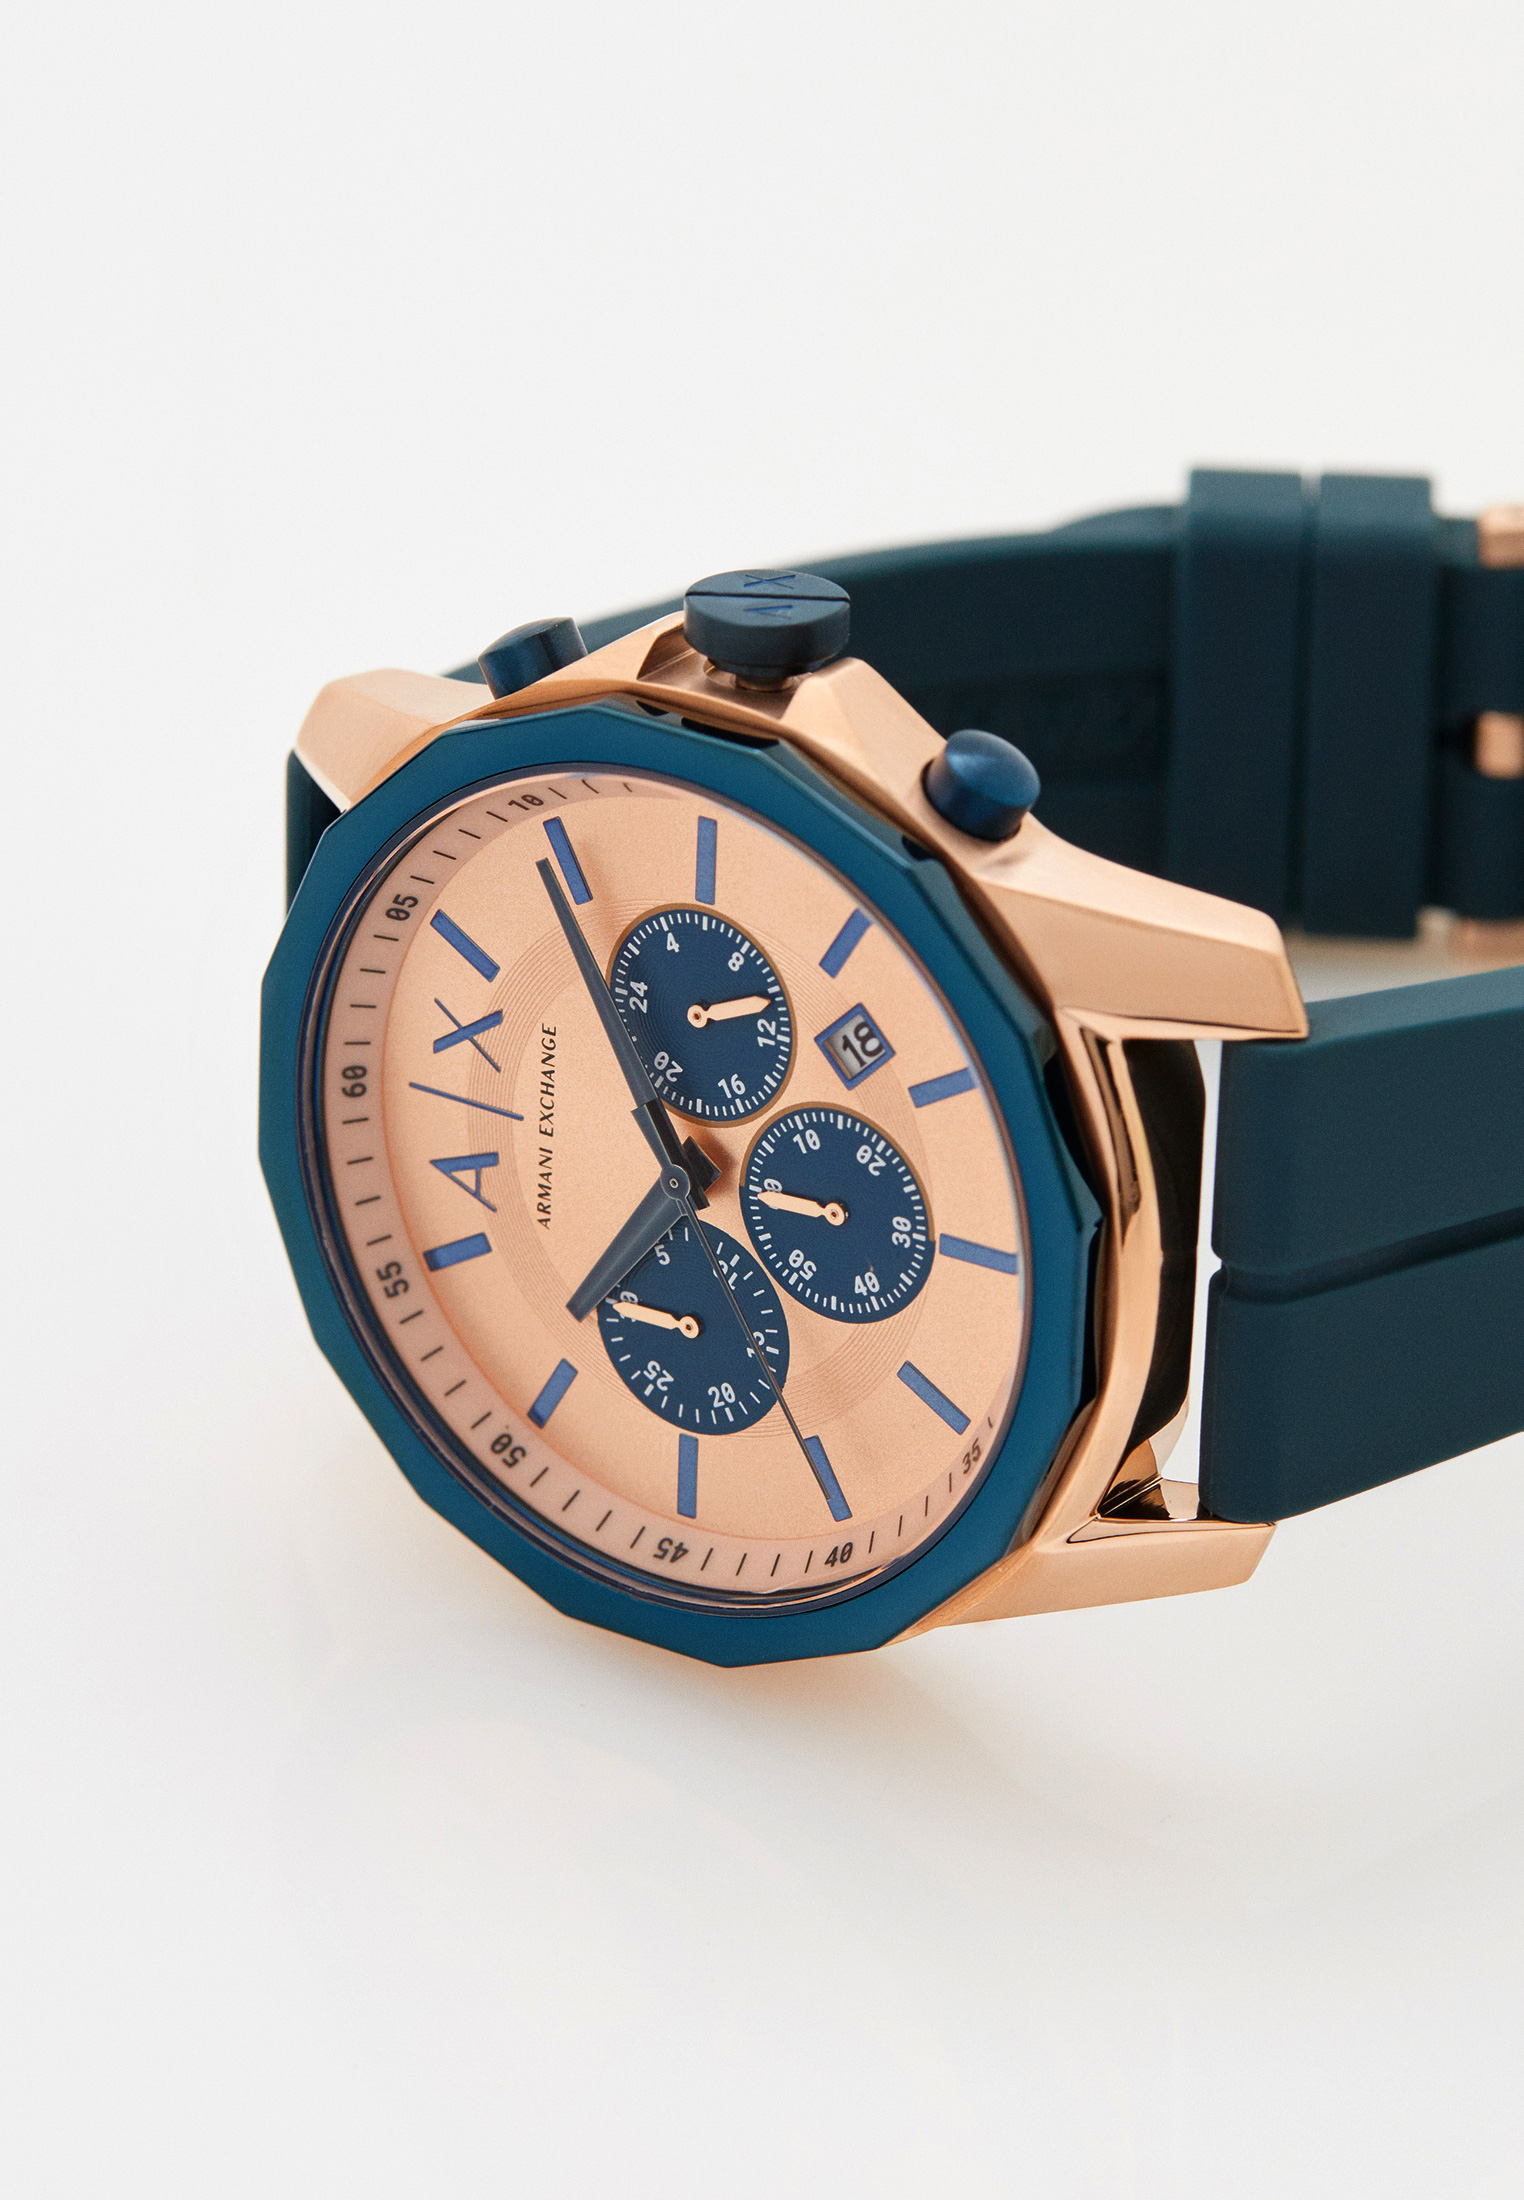 Часы Armani Exchange AX1730, цвет: синий, RTLACH953001 — купить в  интернет-магазине Lamoda | Quarzuhren